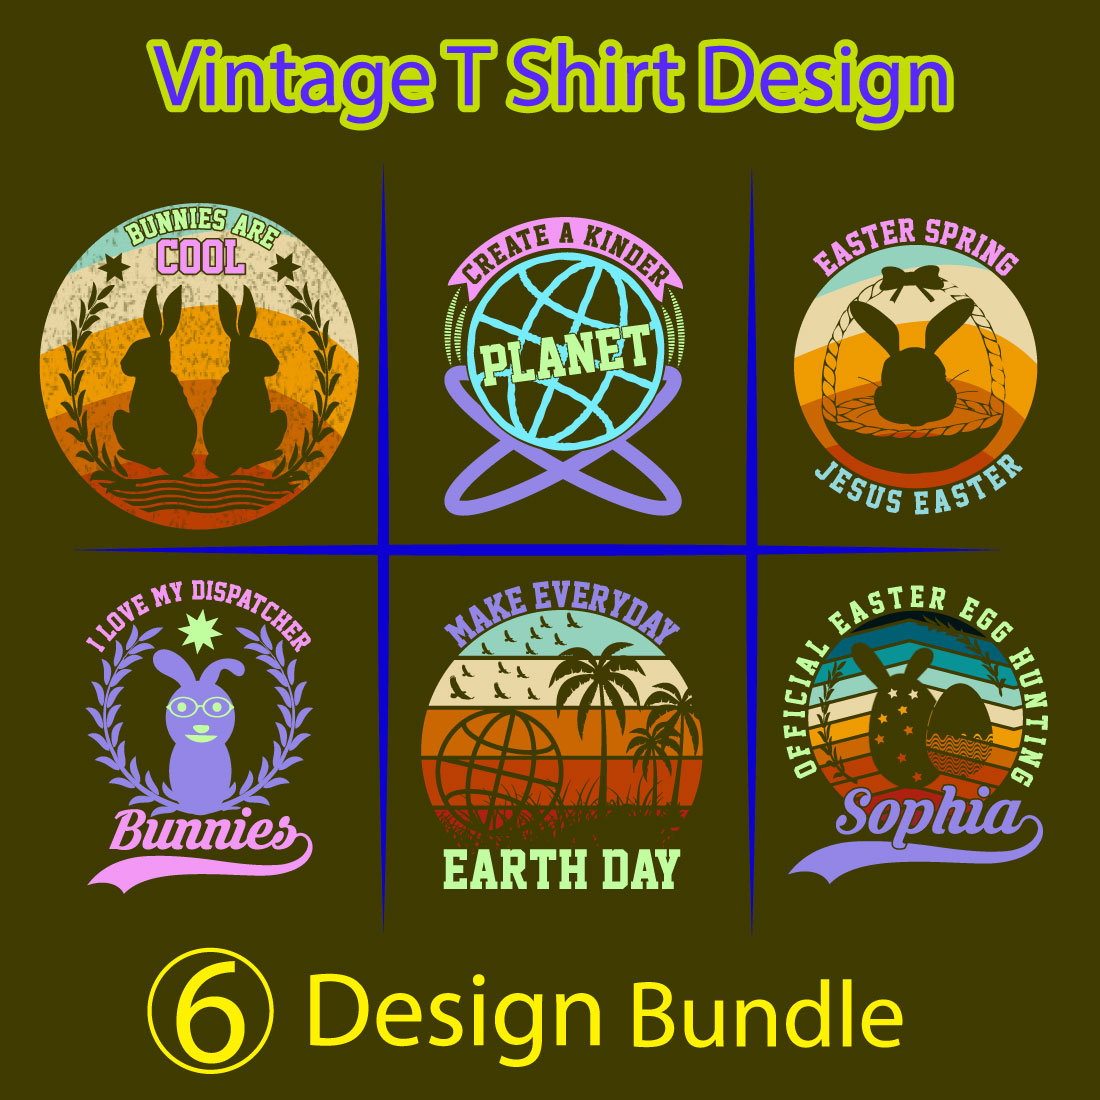 Easter vintage t-shirt design bundle preview image.